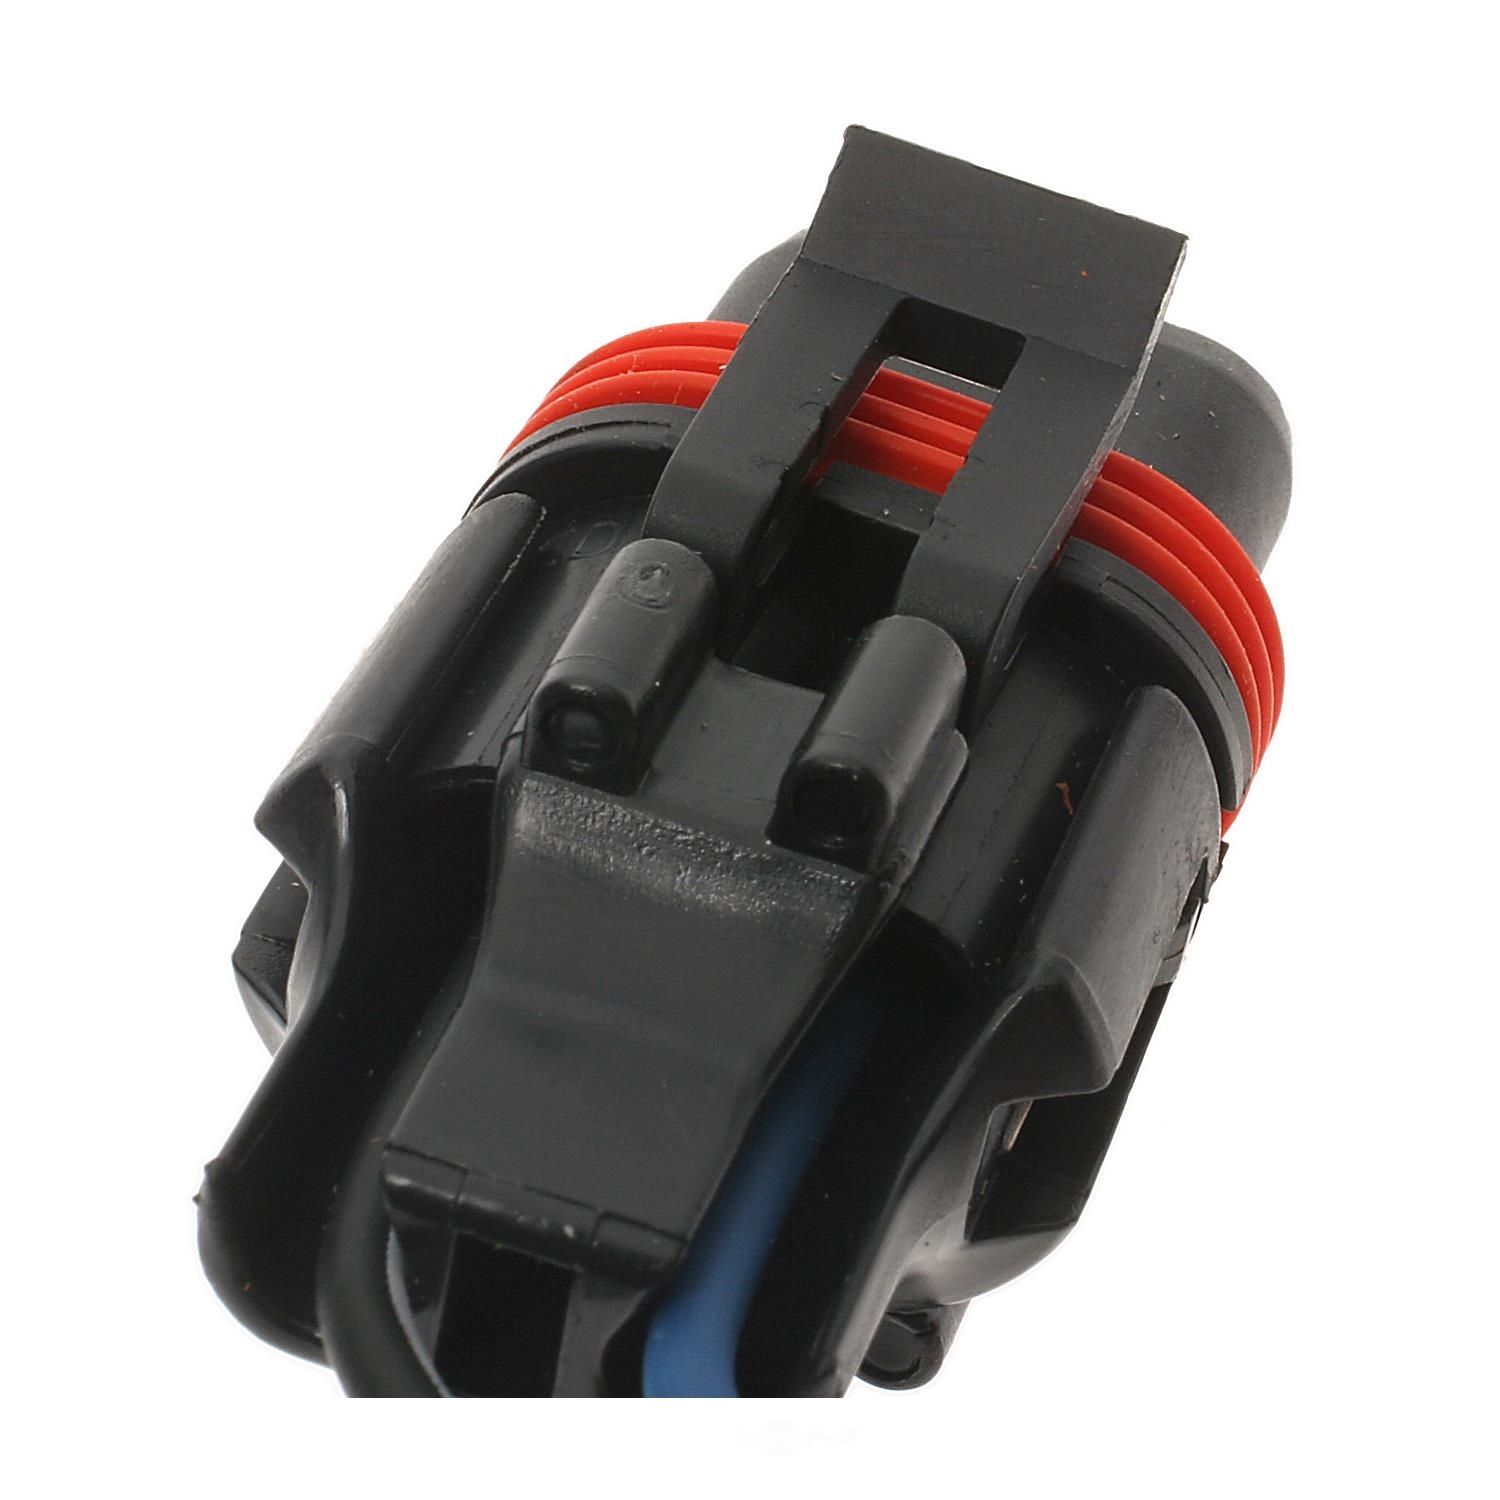 HANDY PACK - Power Steering Pressure Sensor Connector - HDY HP4410